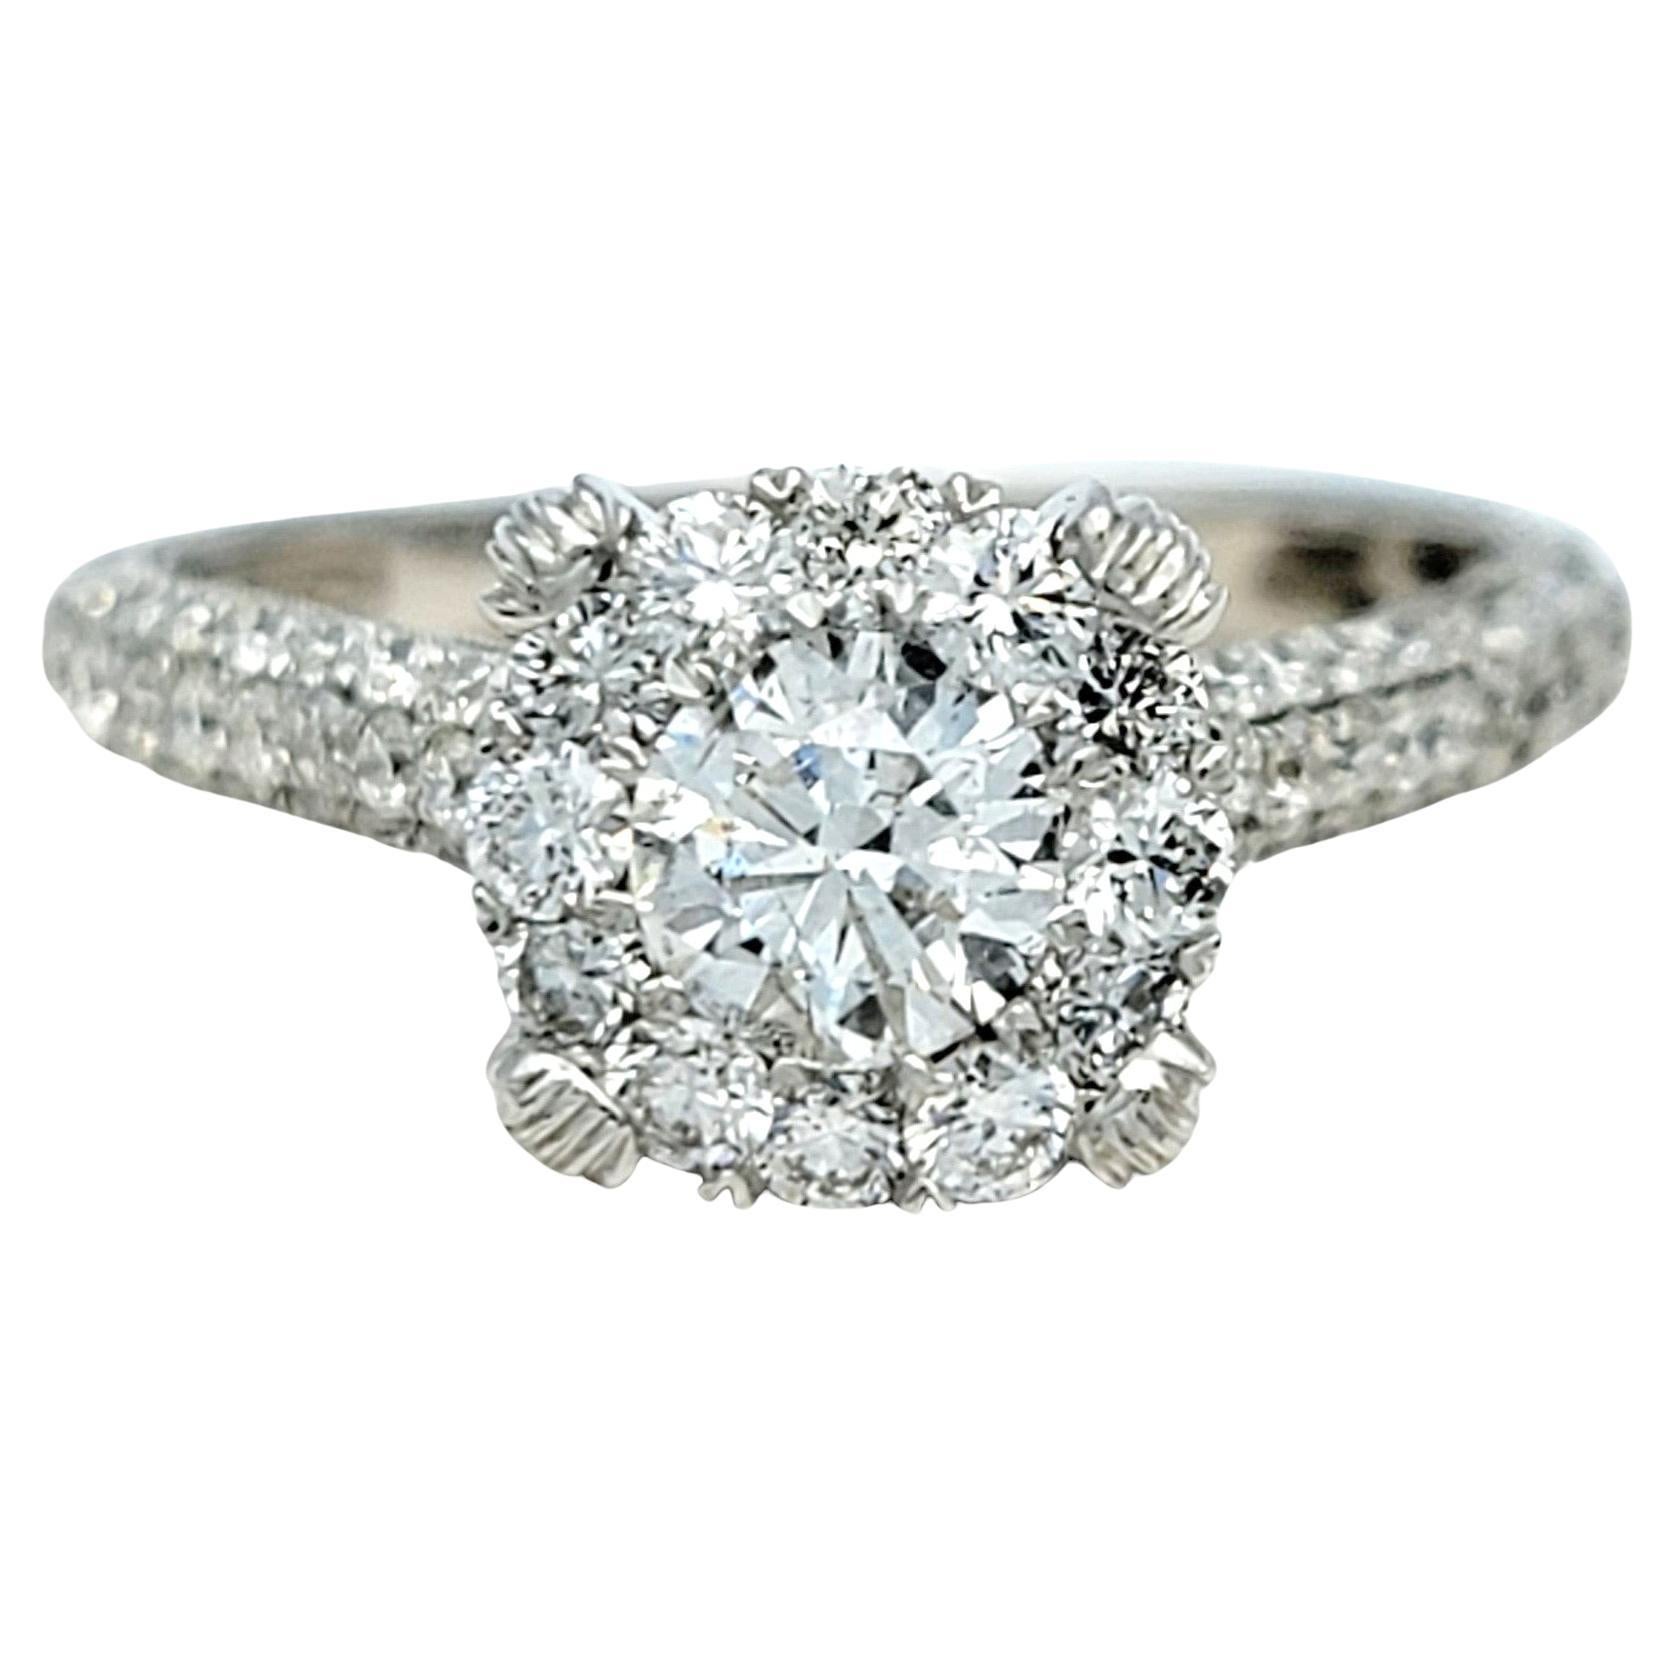 Bague taille 7.5

Découvrez le summum de l'élégance avec cette superbe bague de fiançailles en diamant, éblouissant témoignage d'un amour éternel et d'une beauté intemporelle. En son cœur, un brillant diamant rond de 0,65 carat occupe le devant de